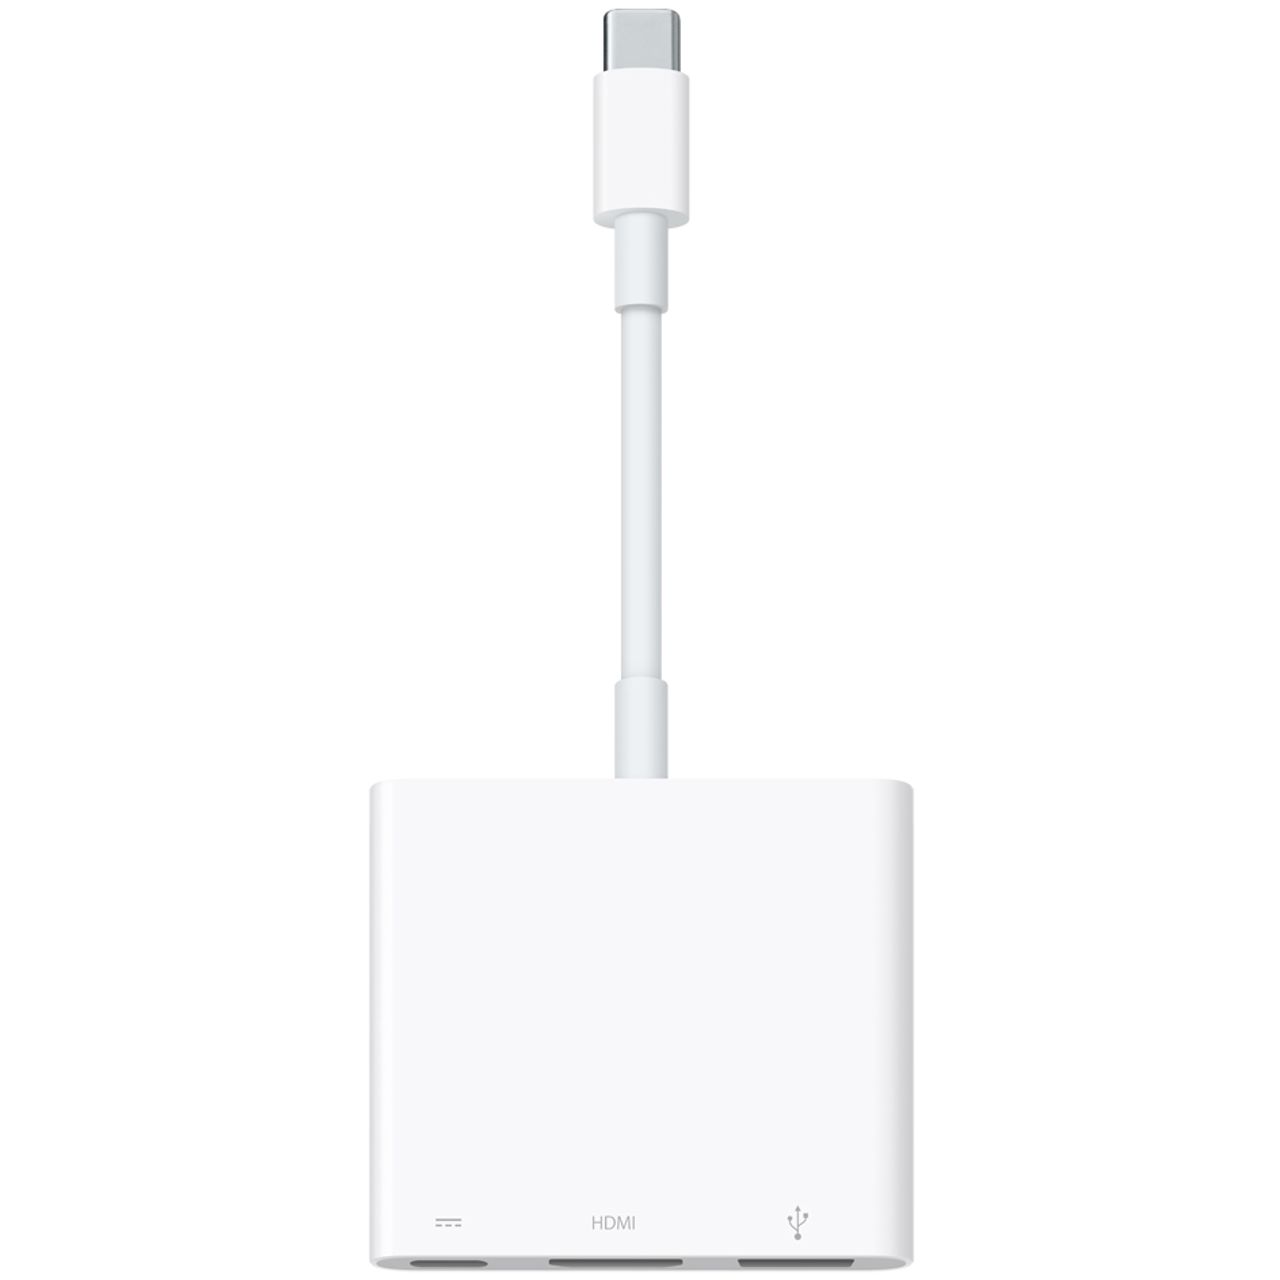 Apple USB-C Digital AV Multiport Adapter Review